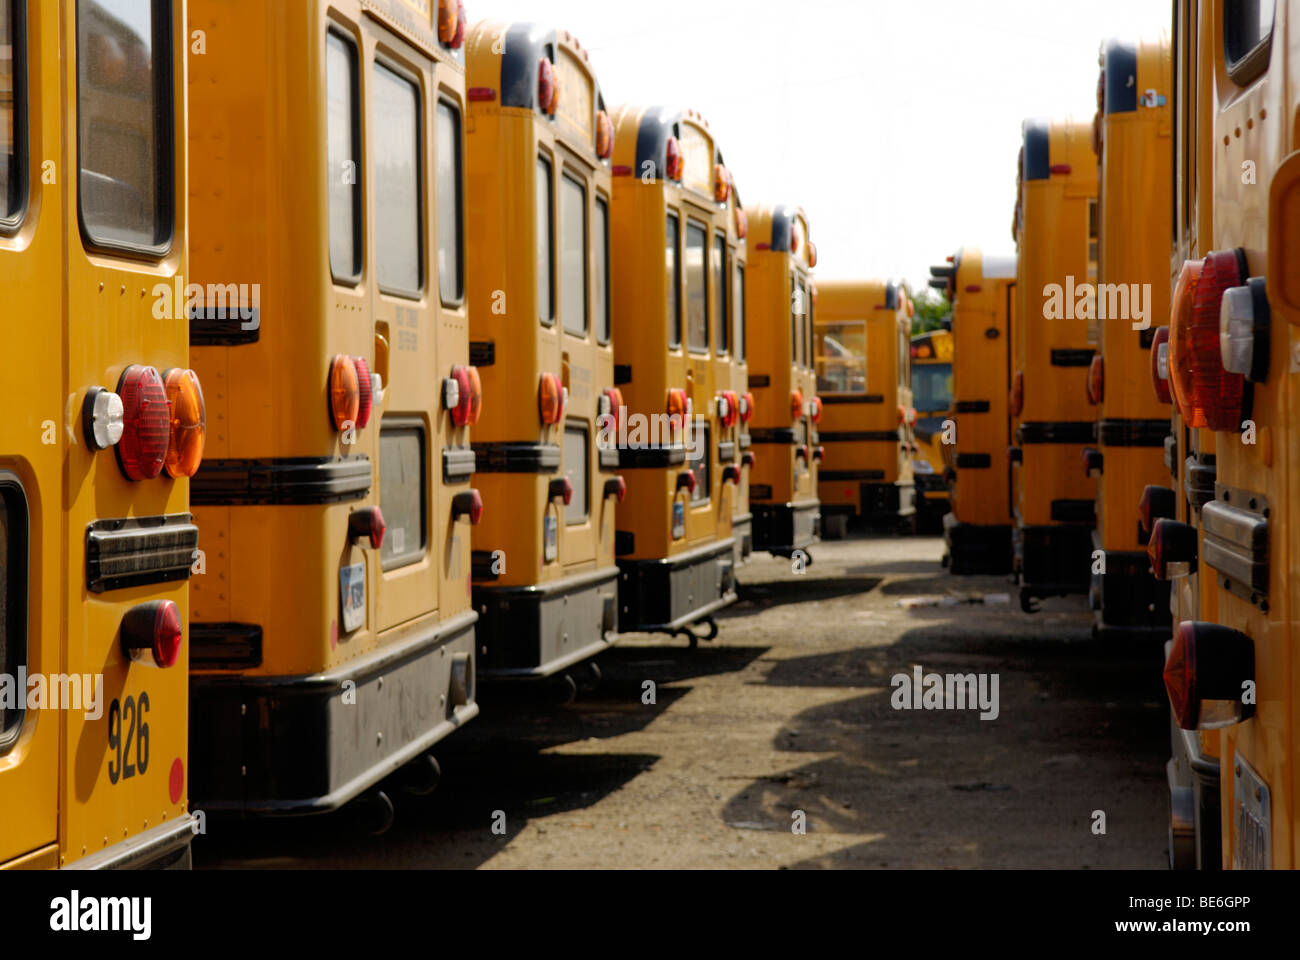 Les autobus scolaires garés dans un depot Banque D'Images